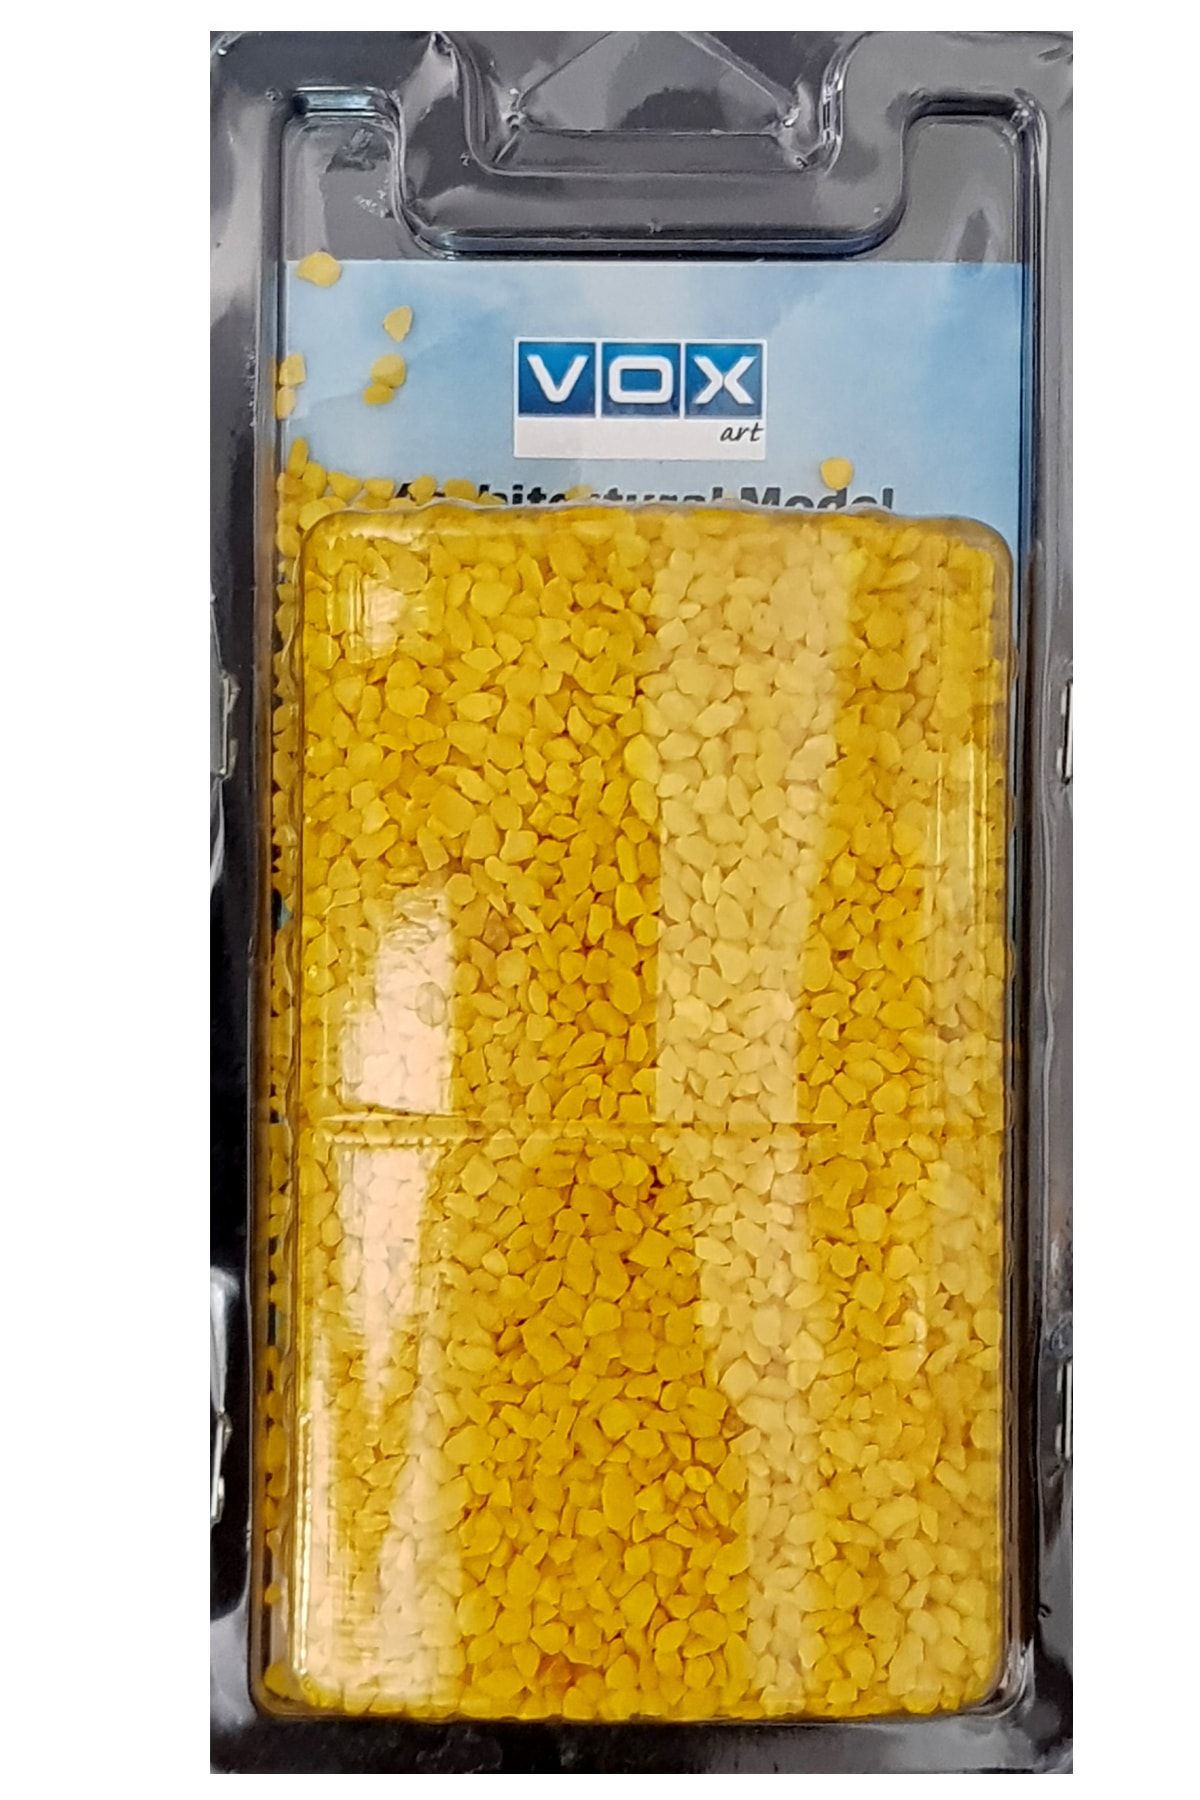 Vox Art Ince Çakıl Taşı - 230 Gr - Sarı